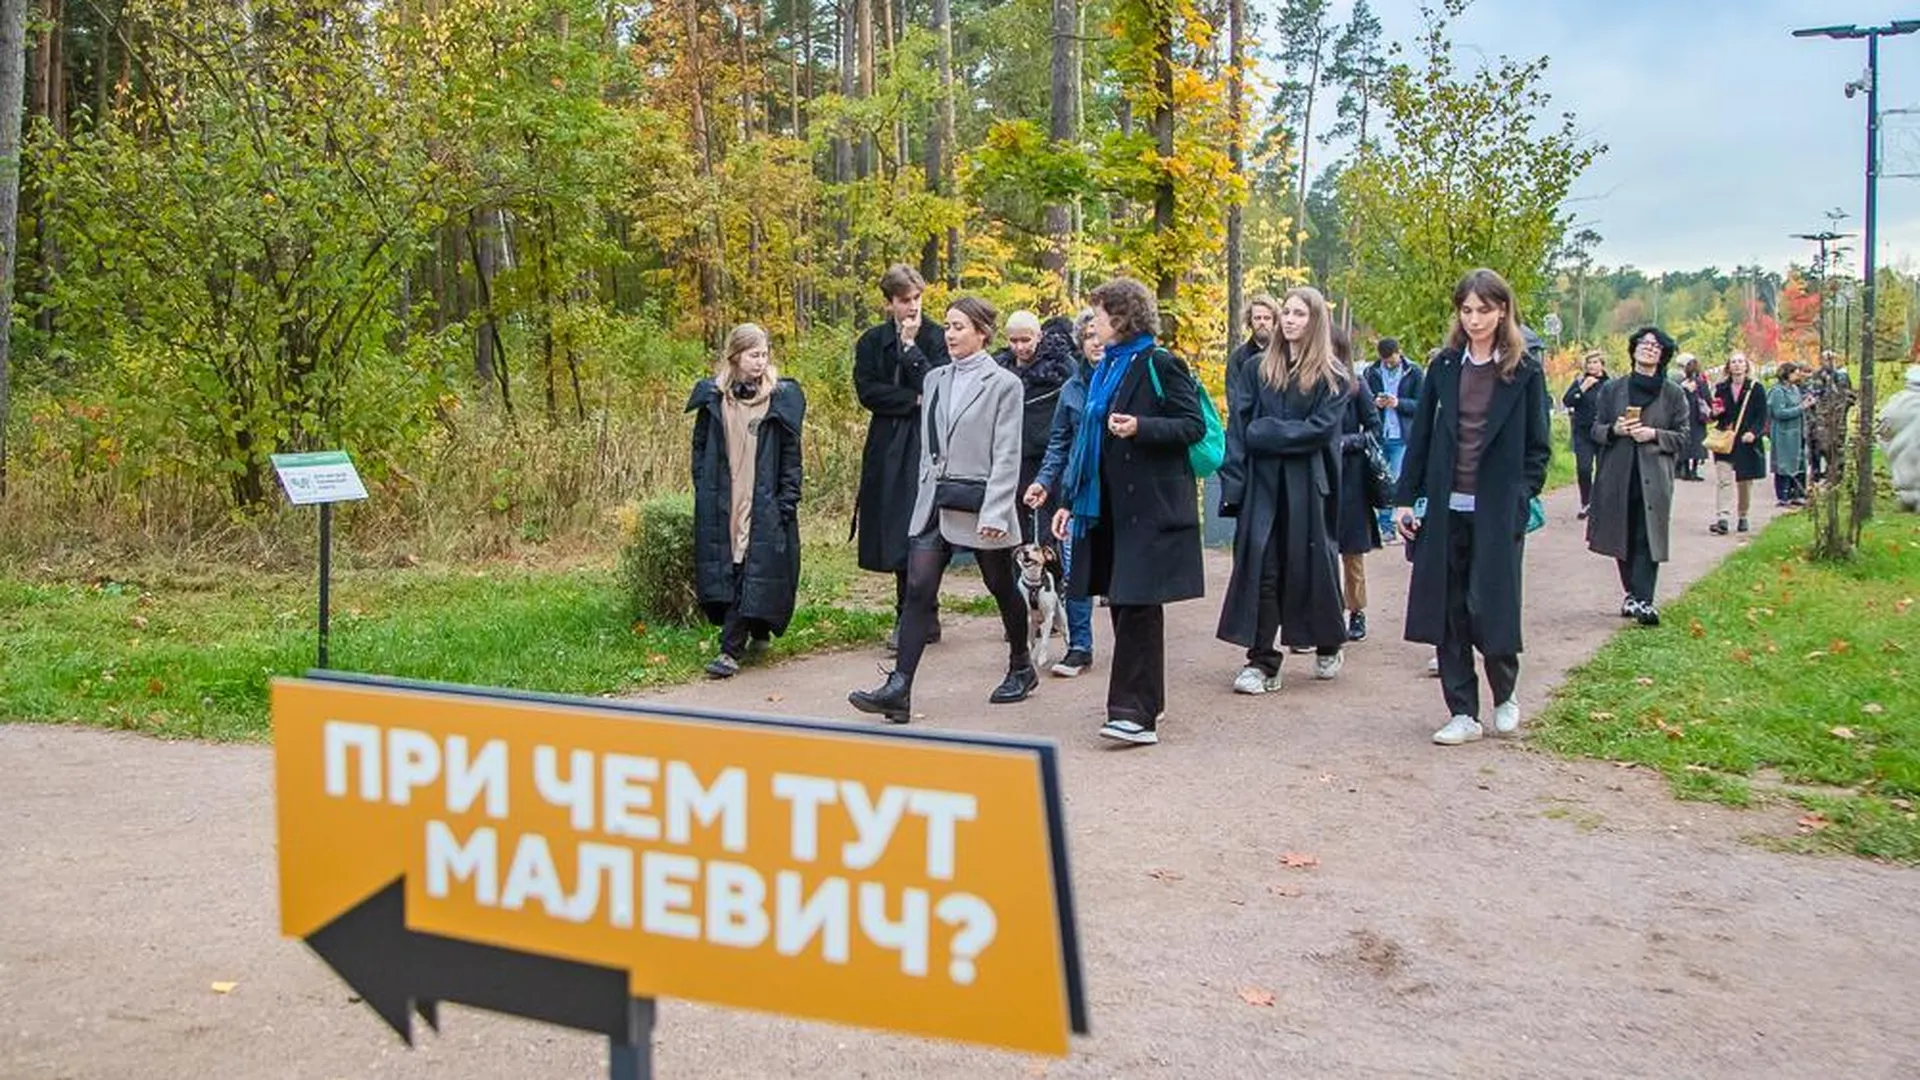 Осенние экскурсии проведут для жителей Подмосковья в парках в День туризма